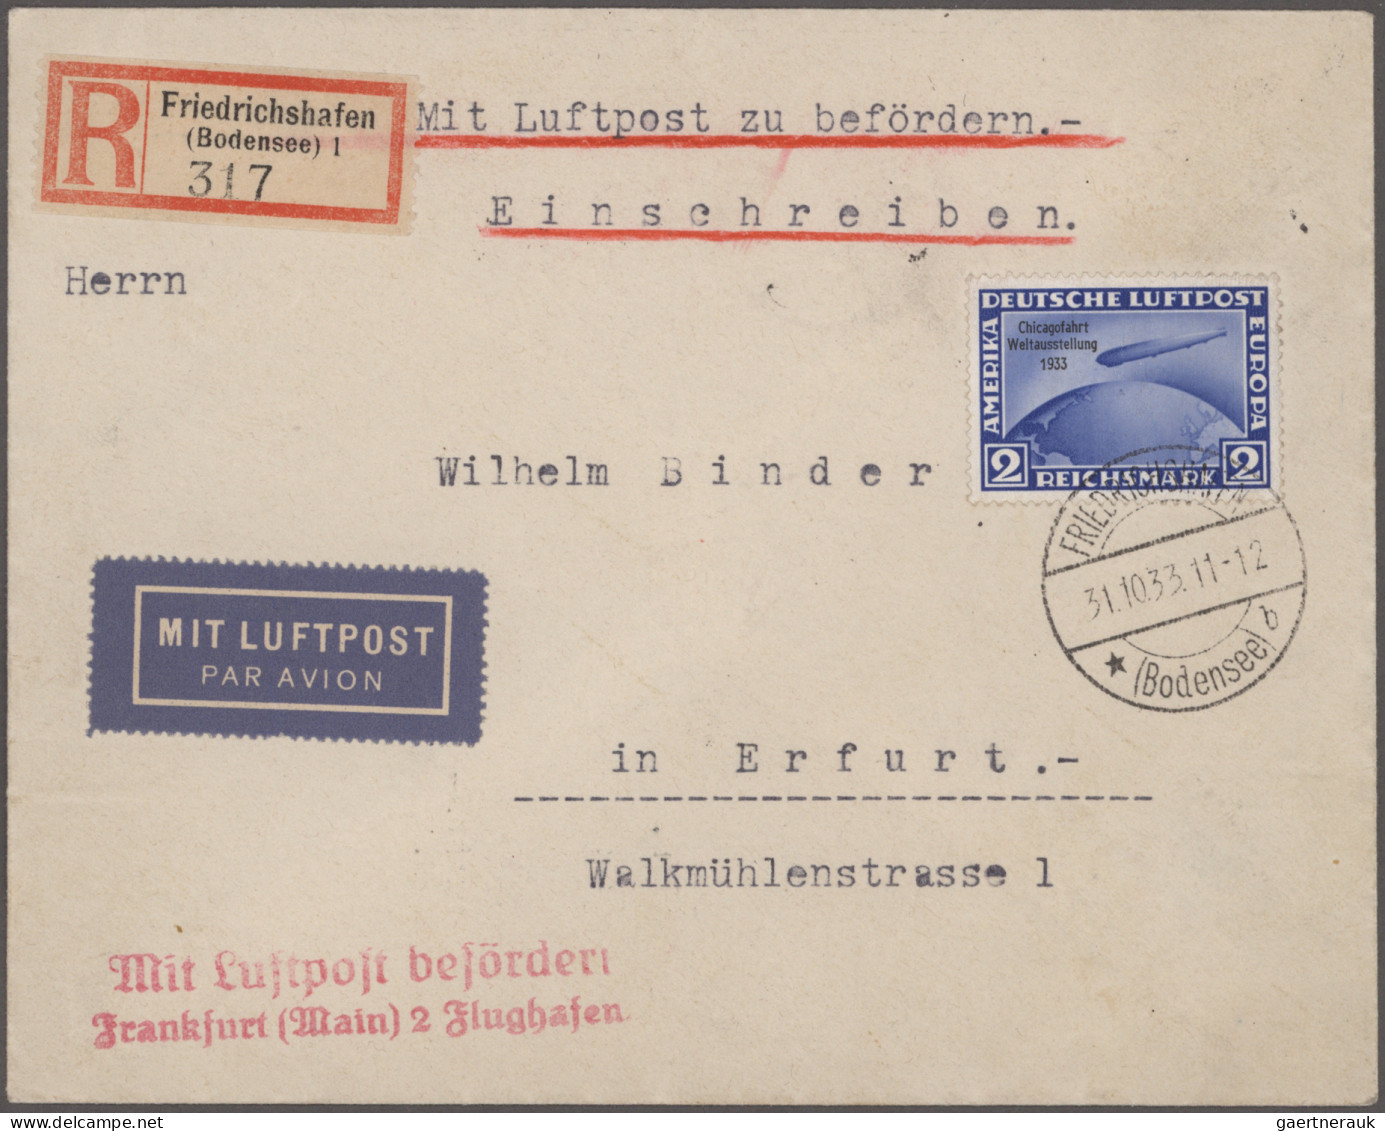 Deutsches Reich - 3. Reich: 1933/1944, saubere Partie von 13 Luftpostbriefen inc